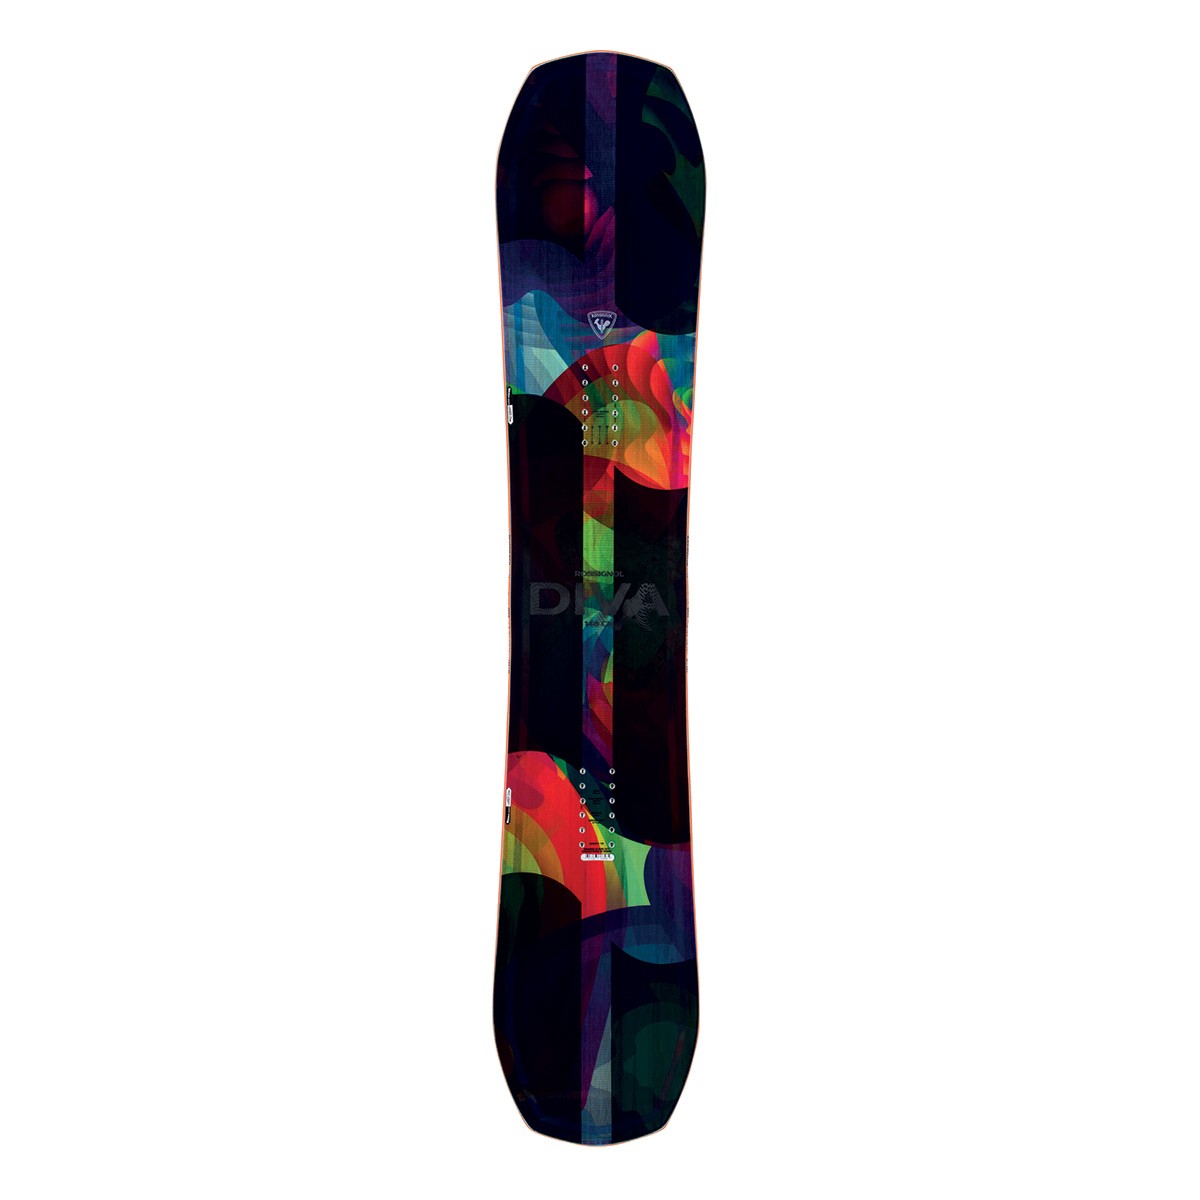  Snowboard Rossignol Diva (Colore: nero fantasia, Taglia: 148) 